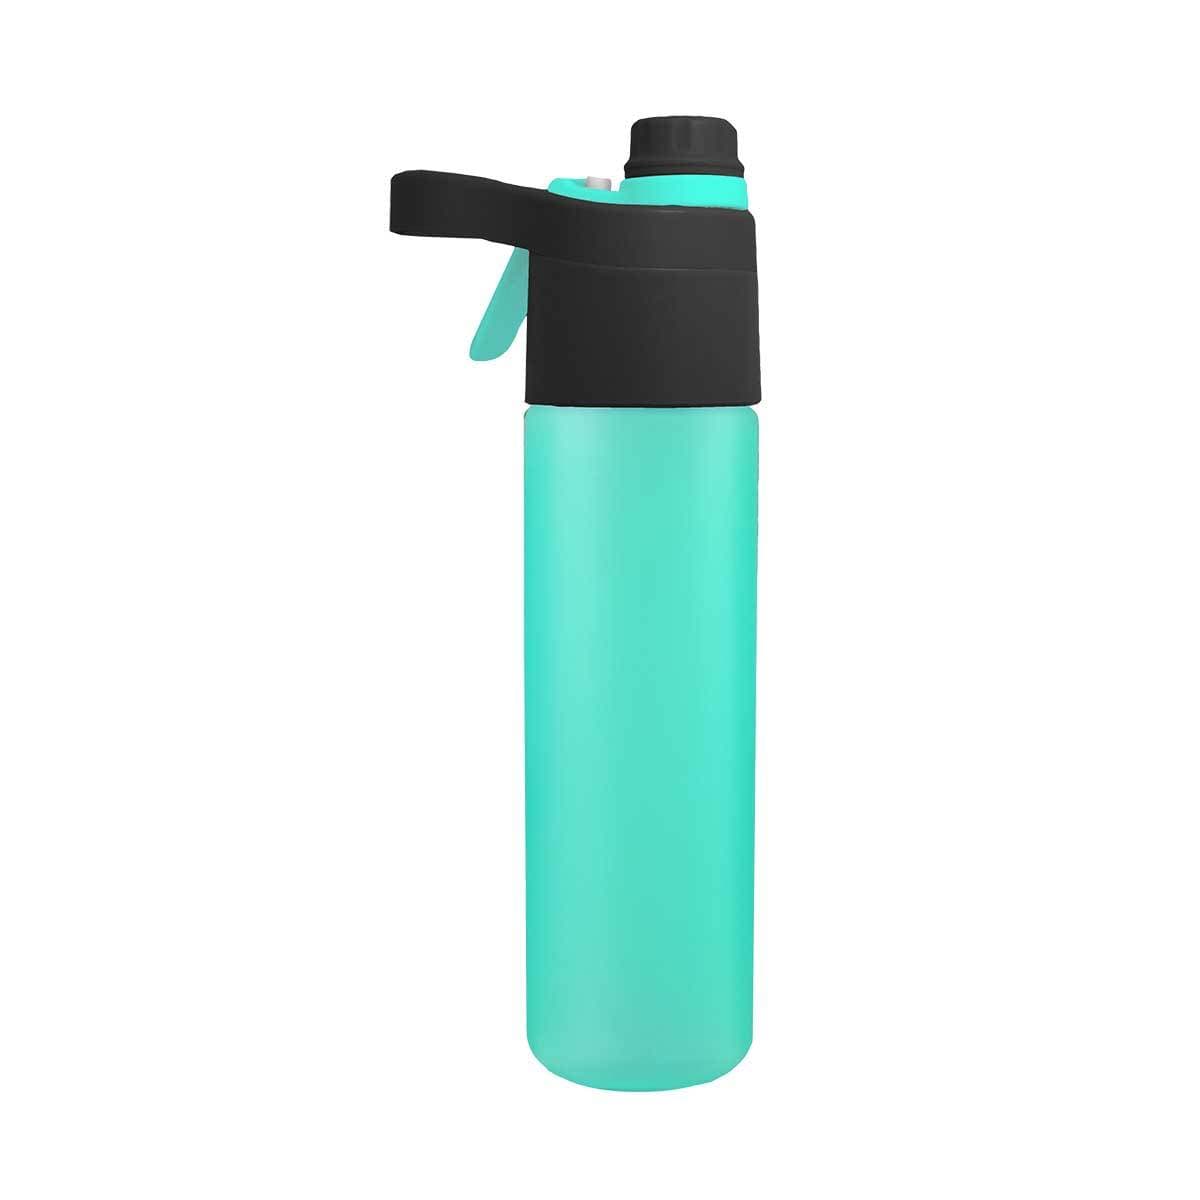 http://relaxusonline.com/cdn/shop/products/525595-2-in-1-Misting-Water-Bottle.jpg?v=1650989388